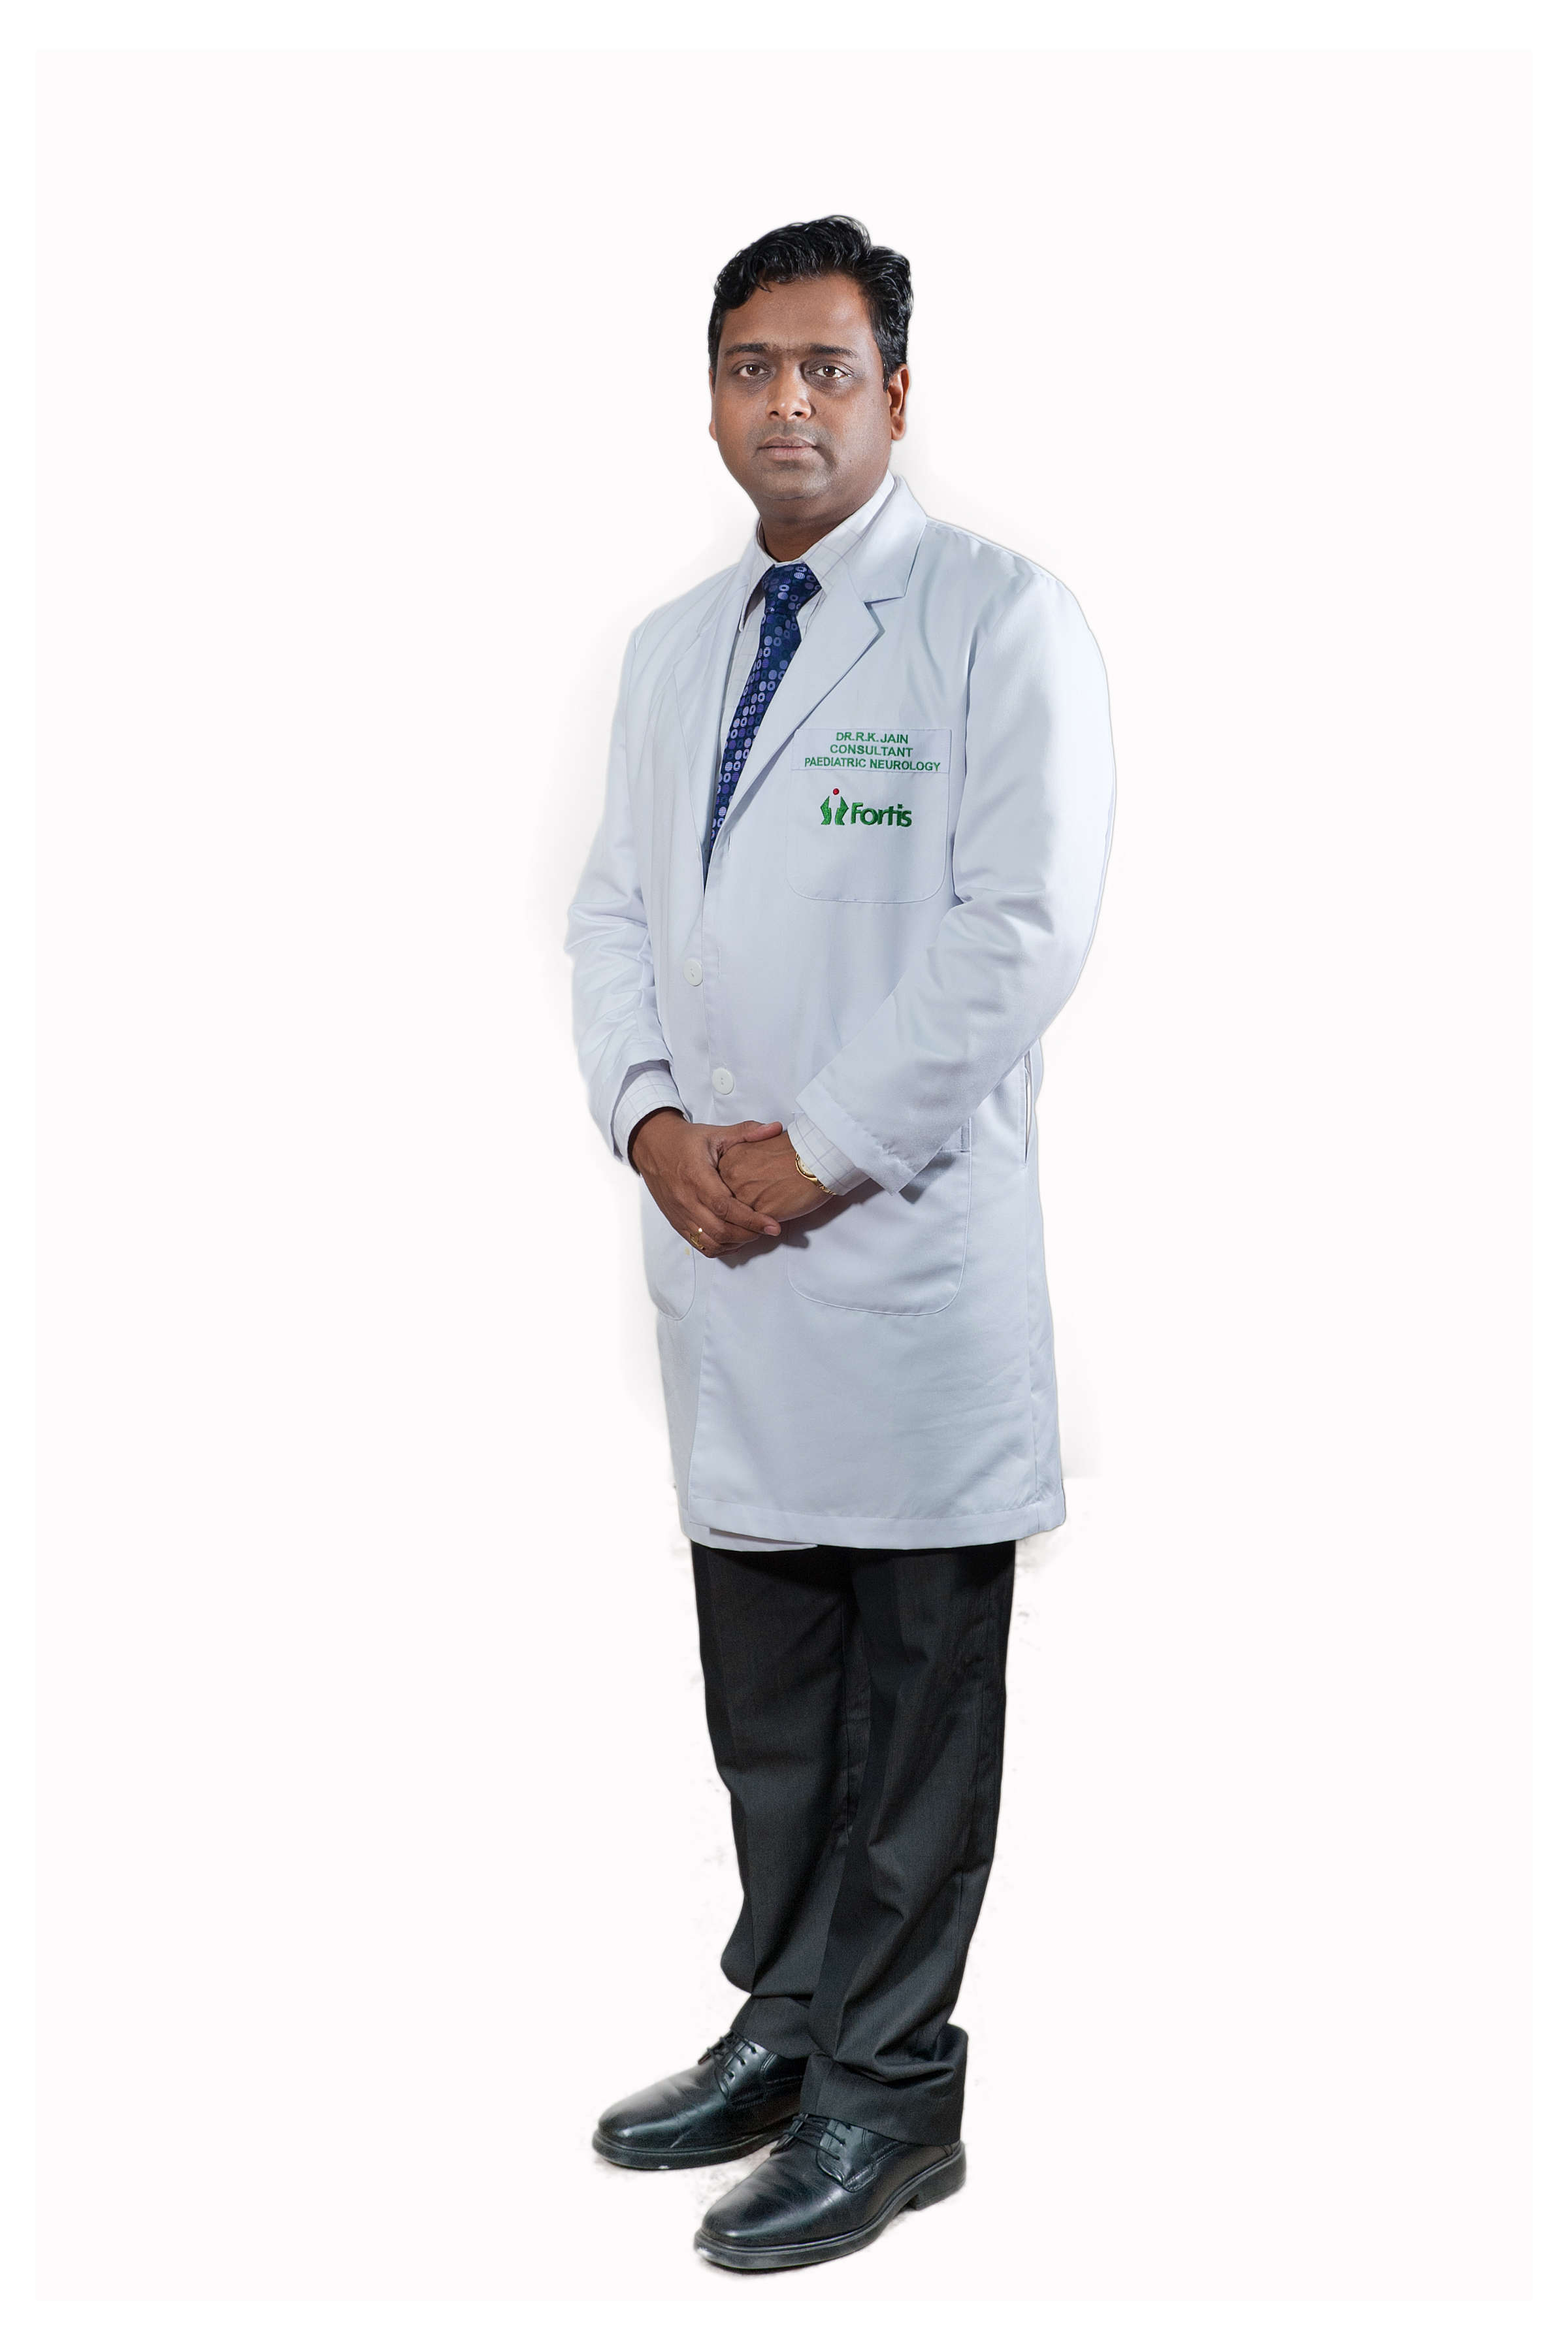 Dr. R K Jain